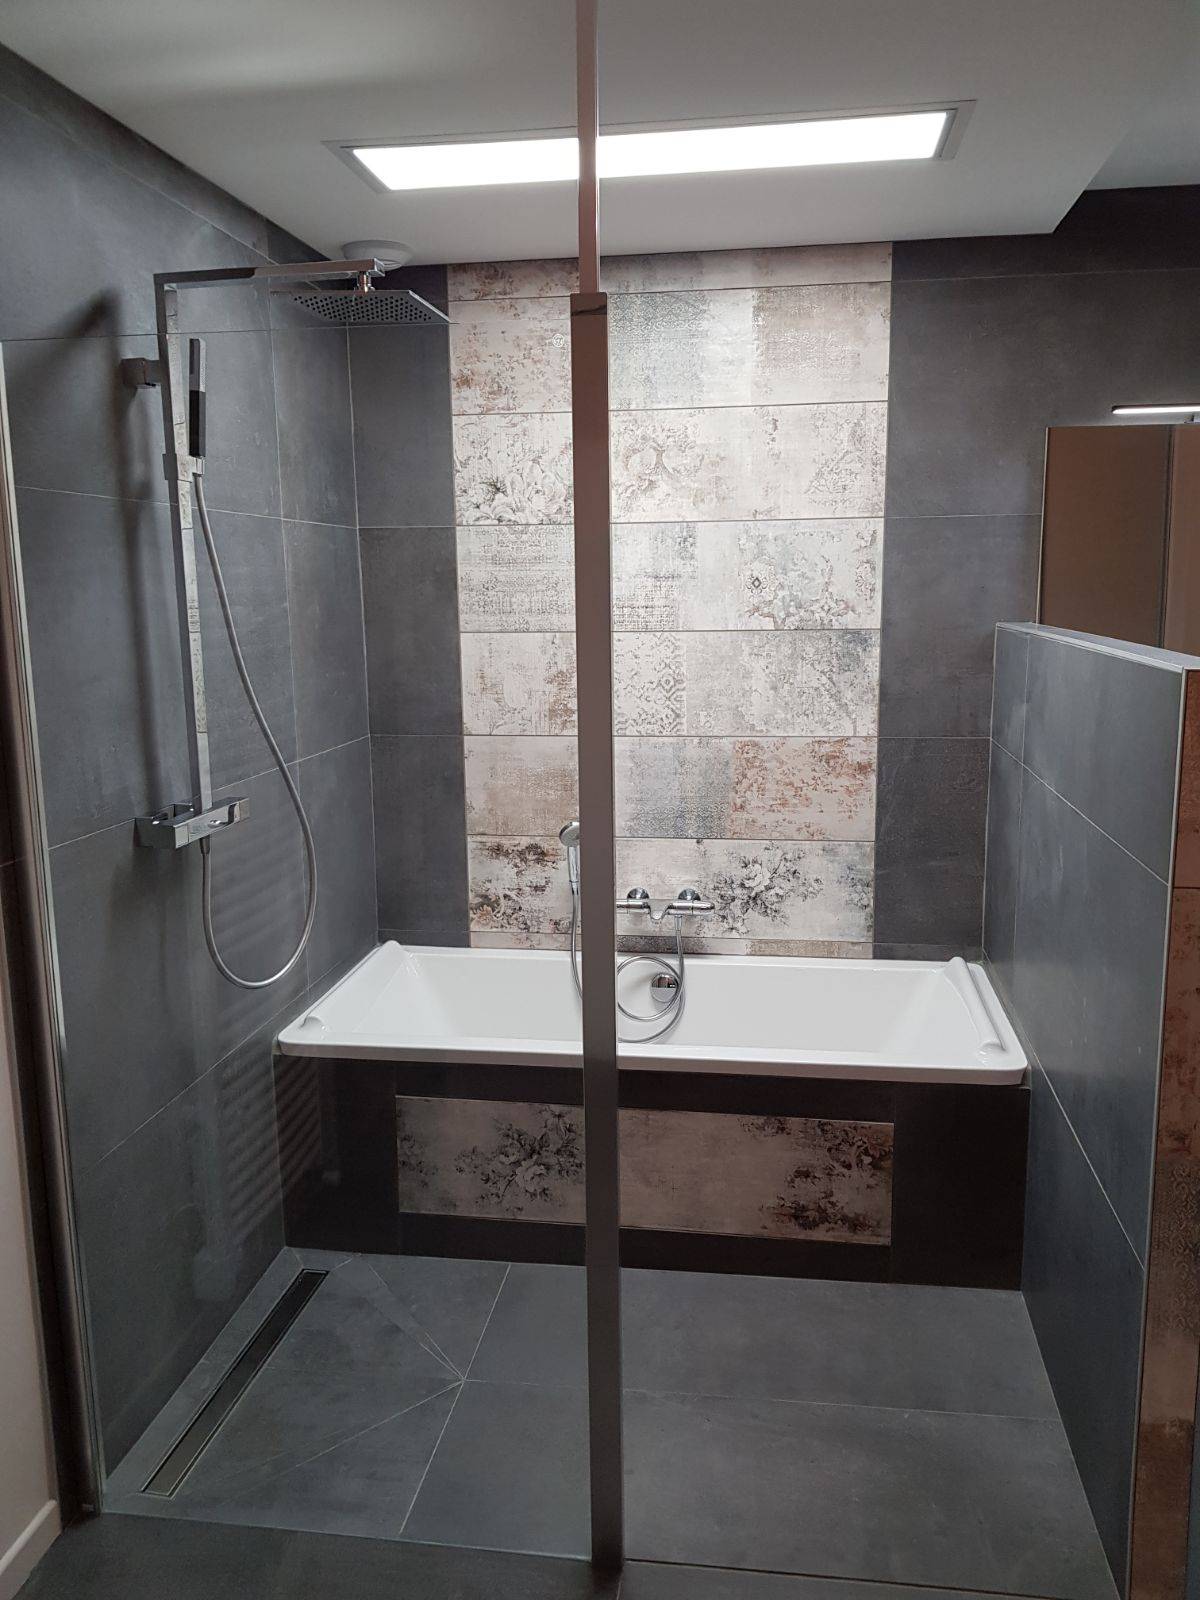 Plomberie, salle de bains à Aix-les-Bains, Chambéry - COGEBAT